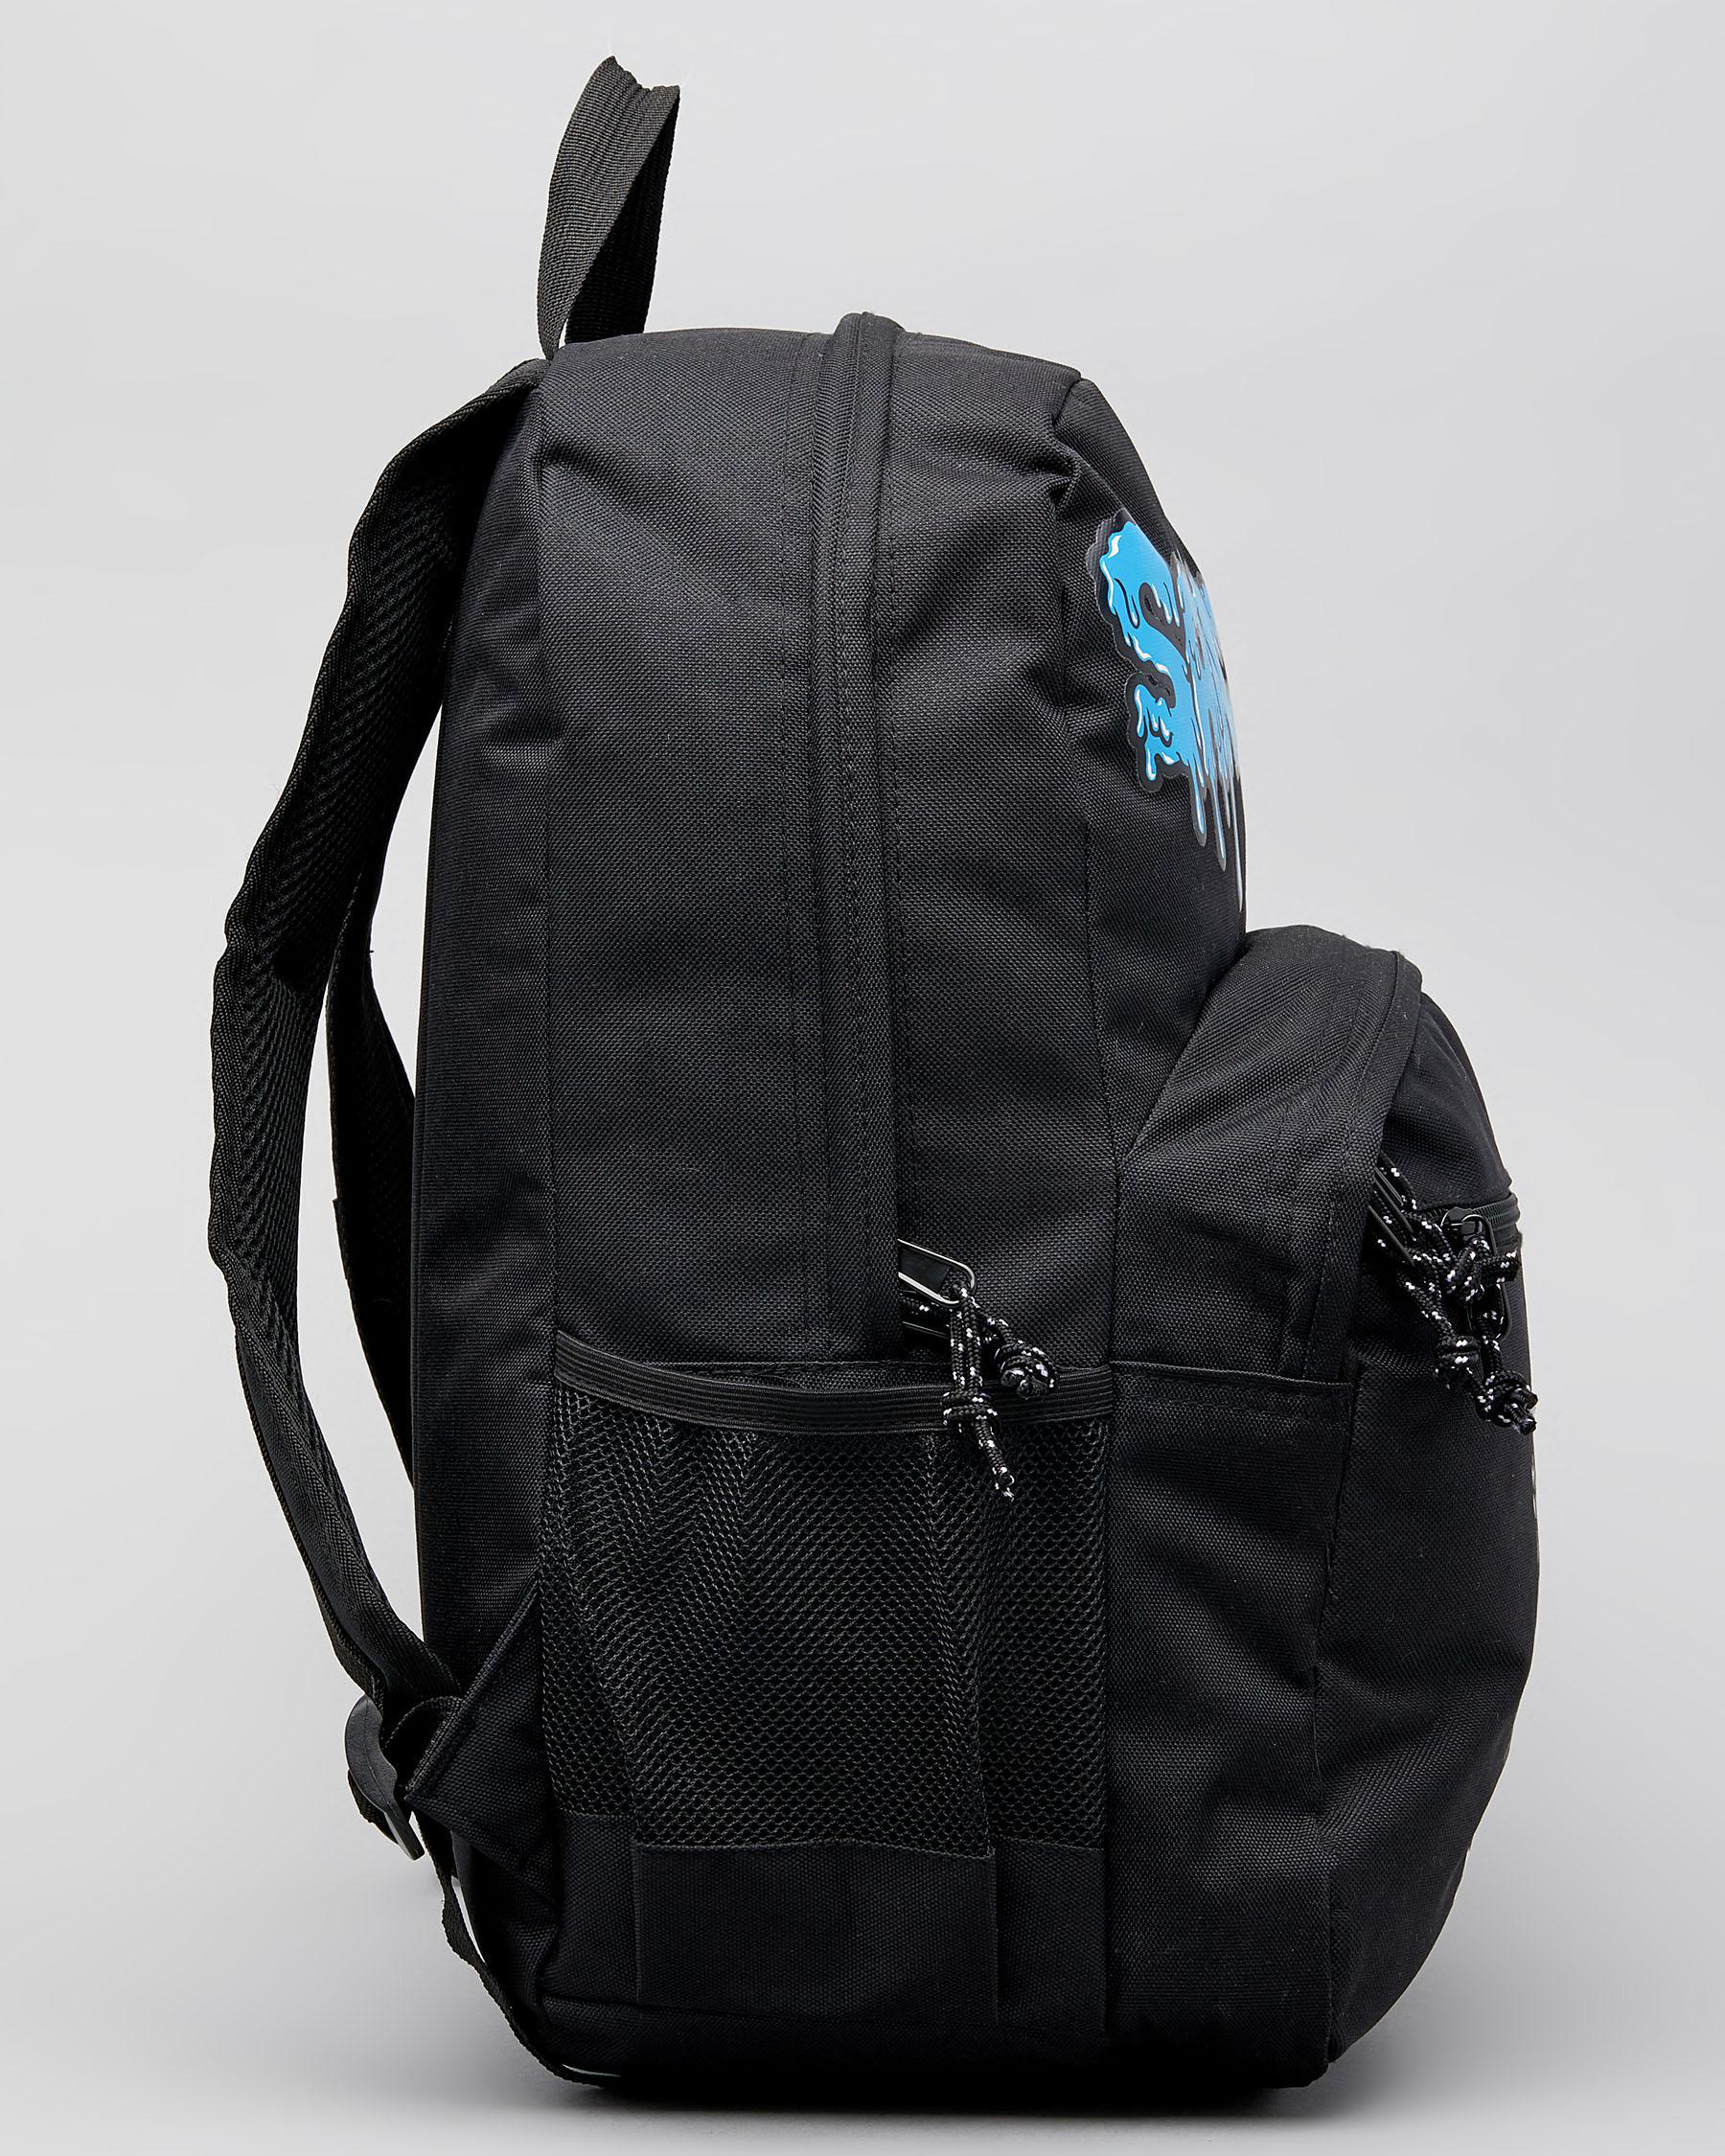 Shop Sanction Sanction Pickup Backpack In Black - Fast Shipping & Easy ...